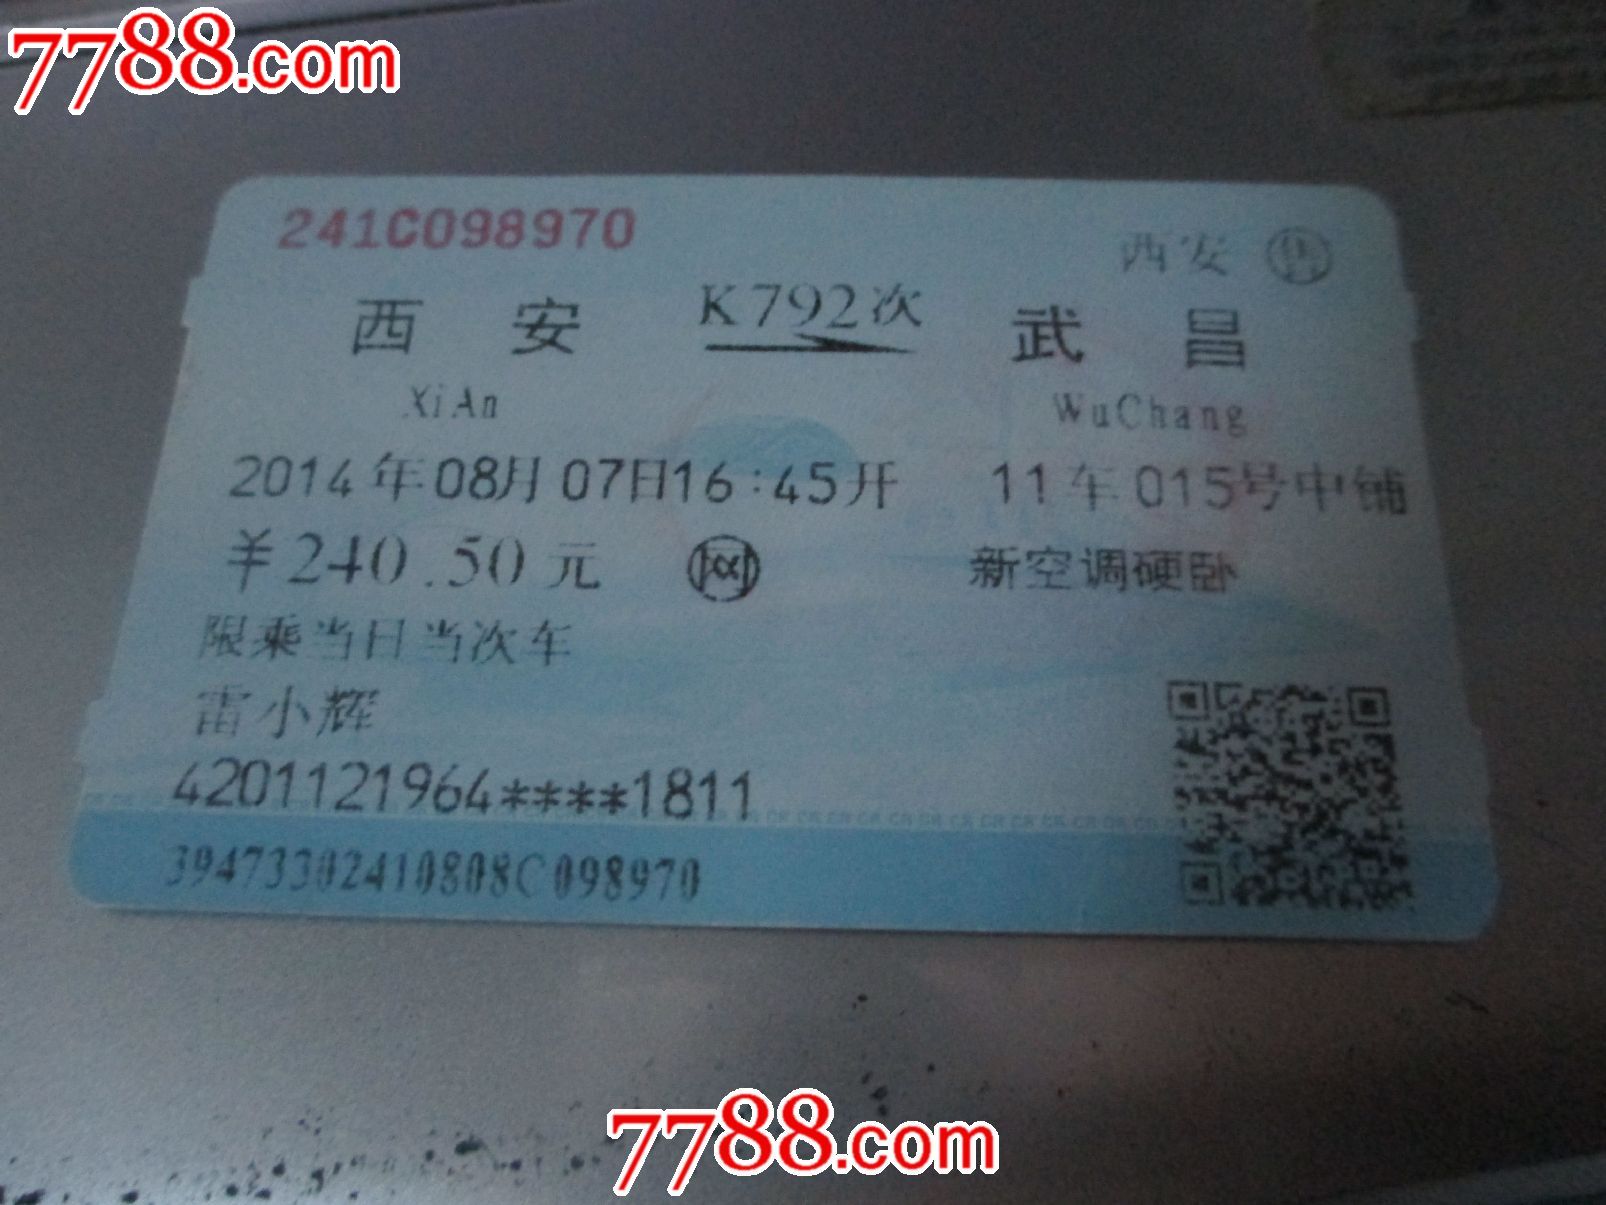 西安-价格:3元-se34694321-火车票-零售-7788